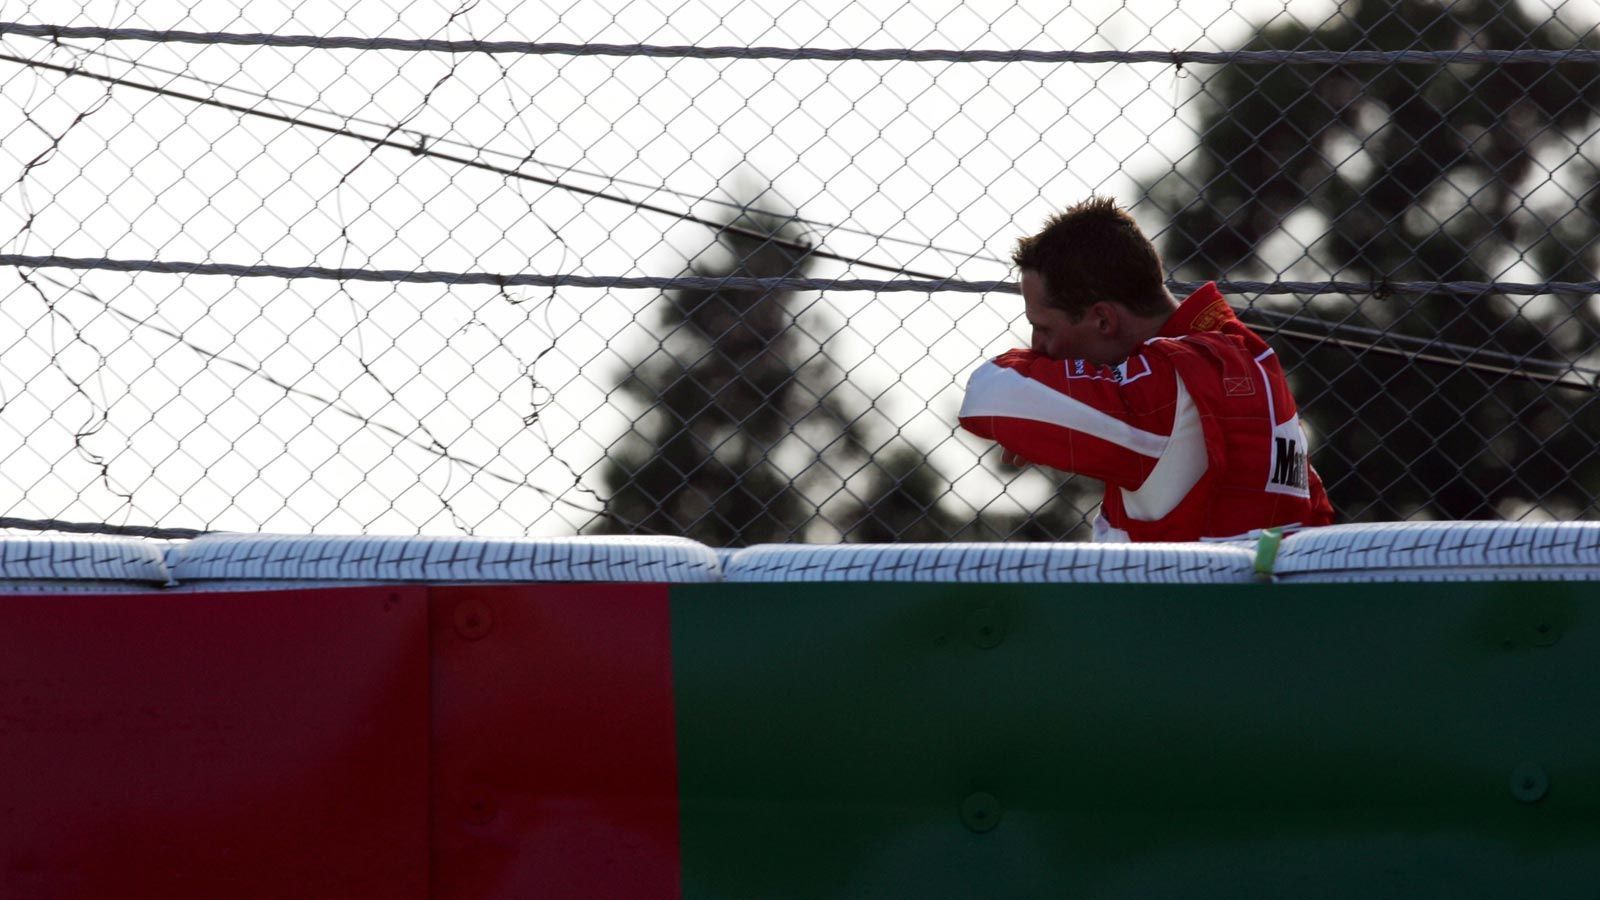 
                <strong>Drama in Suzuka!</strong><br>
                Spätestens beim vorletzten Lauf in Japan realisierte Schumacher vermutlich, dass der achte WM-Titel futsch sein wird. In Führung liegend gab der Motor seines Ferrari den Geist auf. Alonso gewann sein siebtes Saisonrennen und übernahm wieder die Führung der Gesamtwertung. Im letzten Rennen in Brasilien war es so nur noch Formsache für den Spanier, dem ein zweiter Platz reichte, um den Titel zu sichern.
              